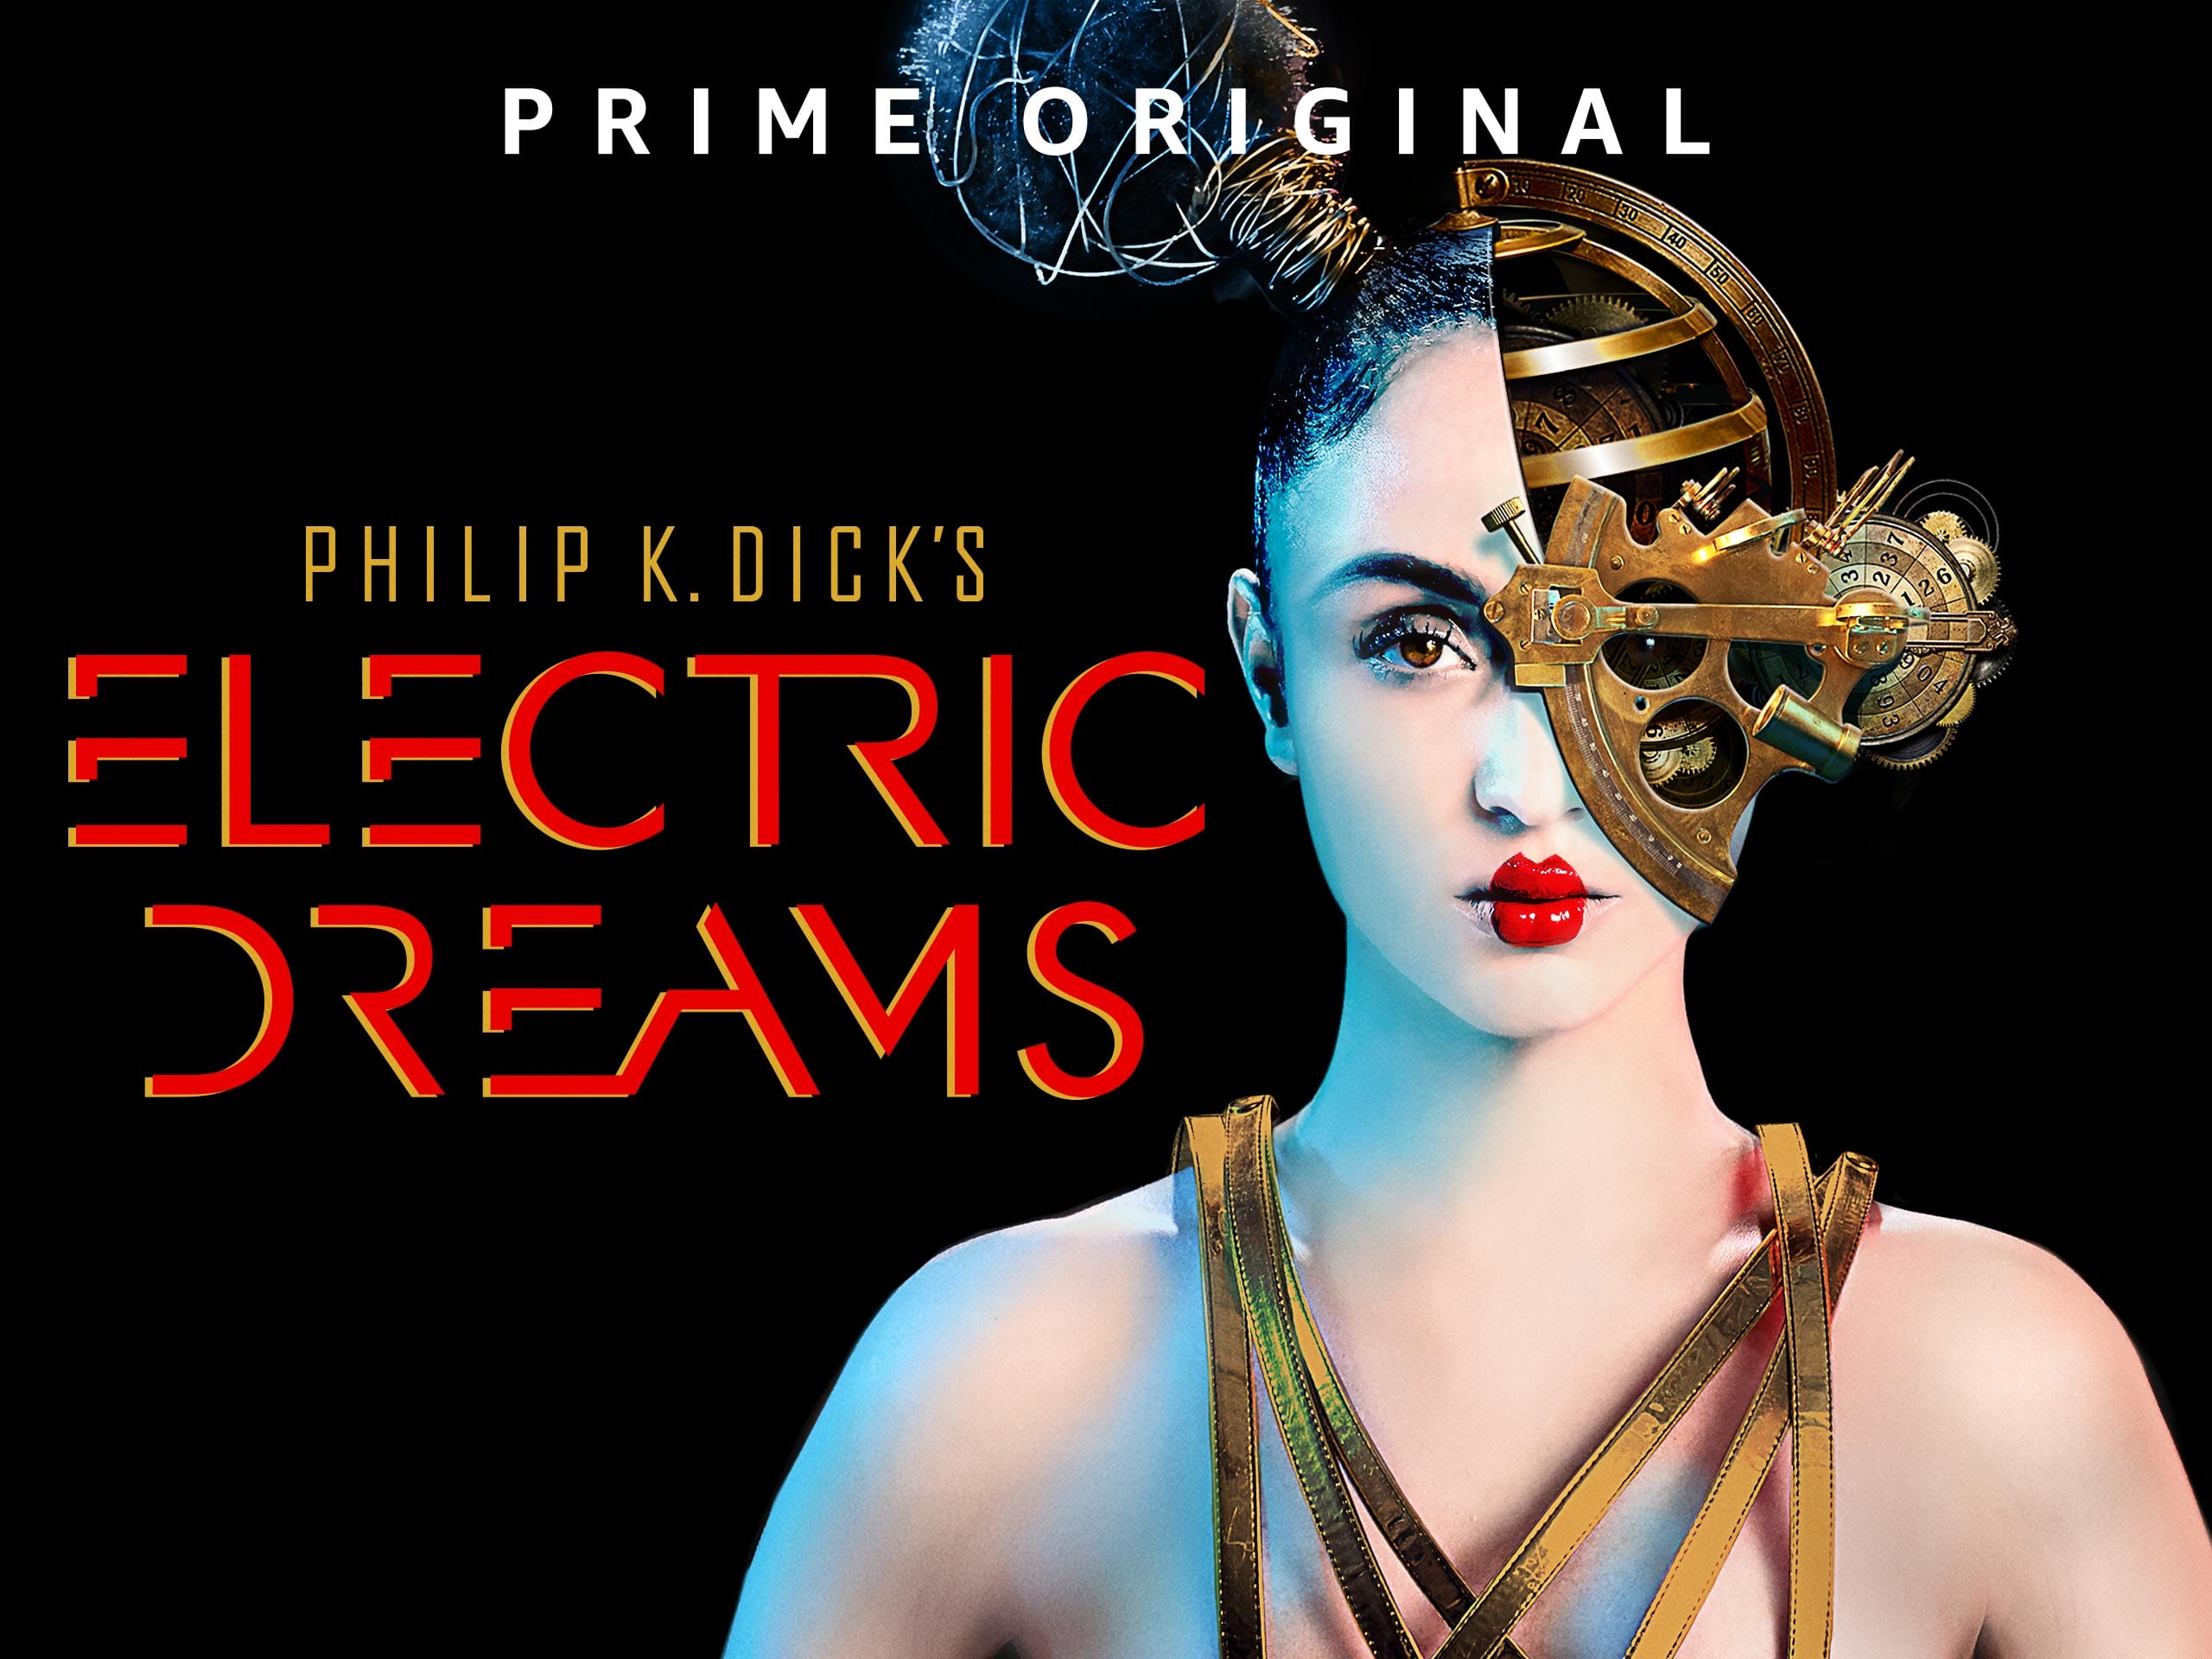 Trailer zu Philip K. Dick’s Electric Dreams